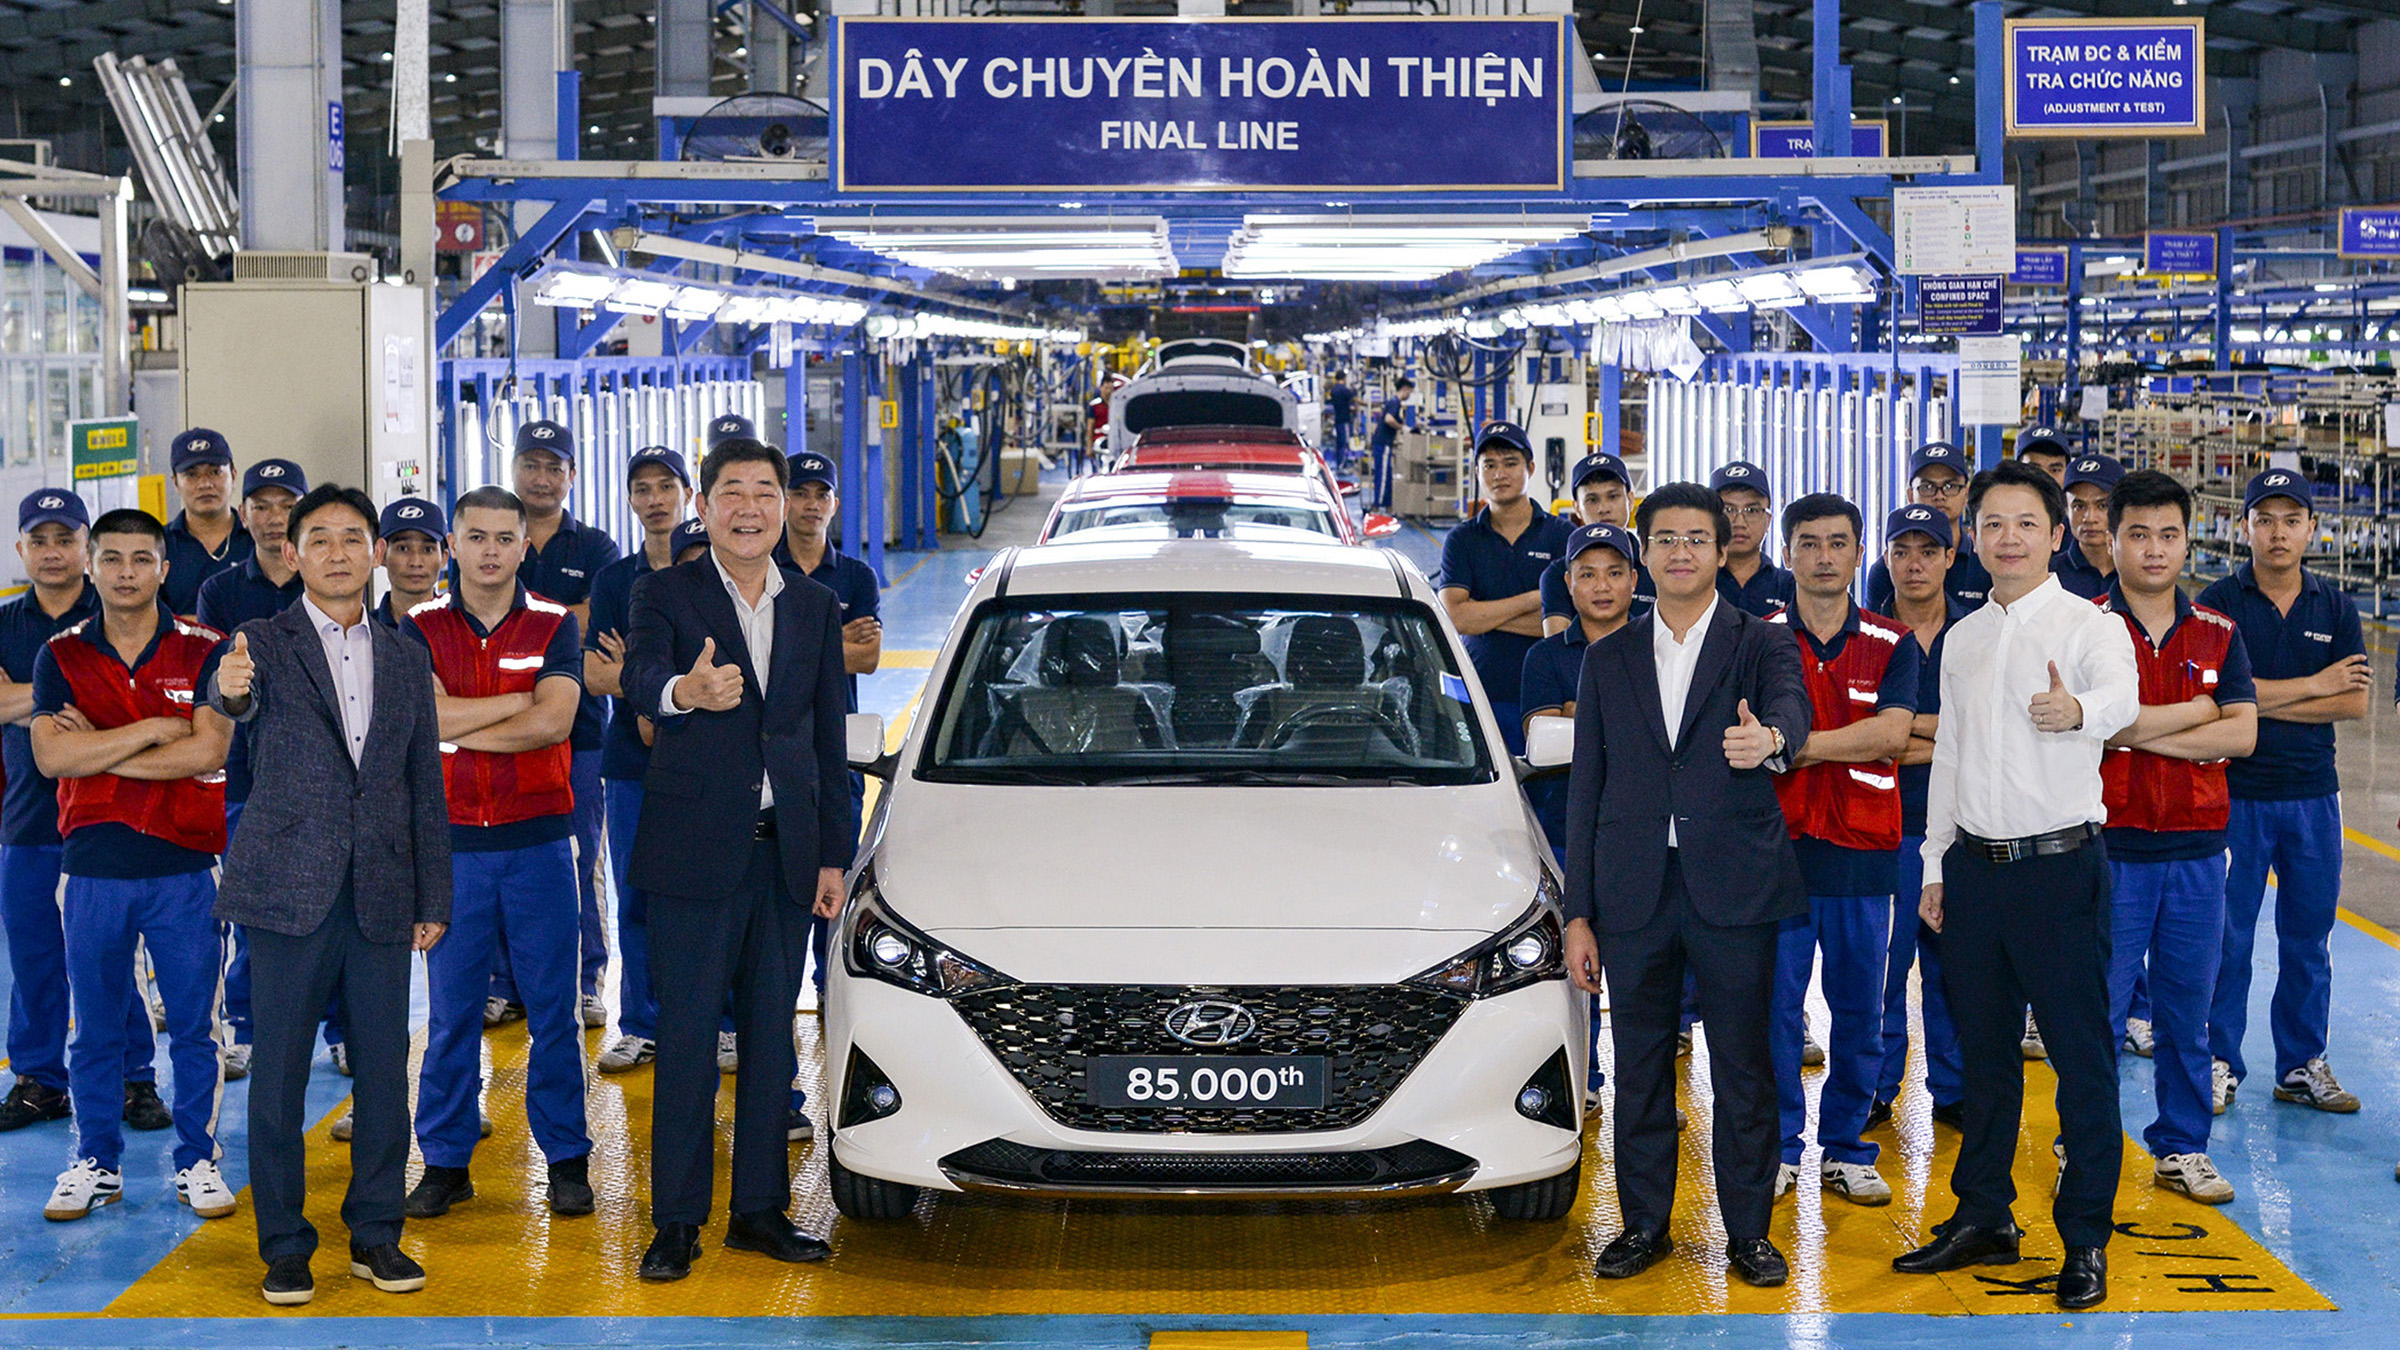 Hyundai Thành Công xuất xưởng chiếc Hyundai Accent thứ 85.000 tại Việt Nam  - Báo điện tử VnMedia - Tin nóng Việt Nam và thế giới